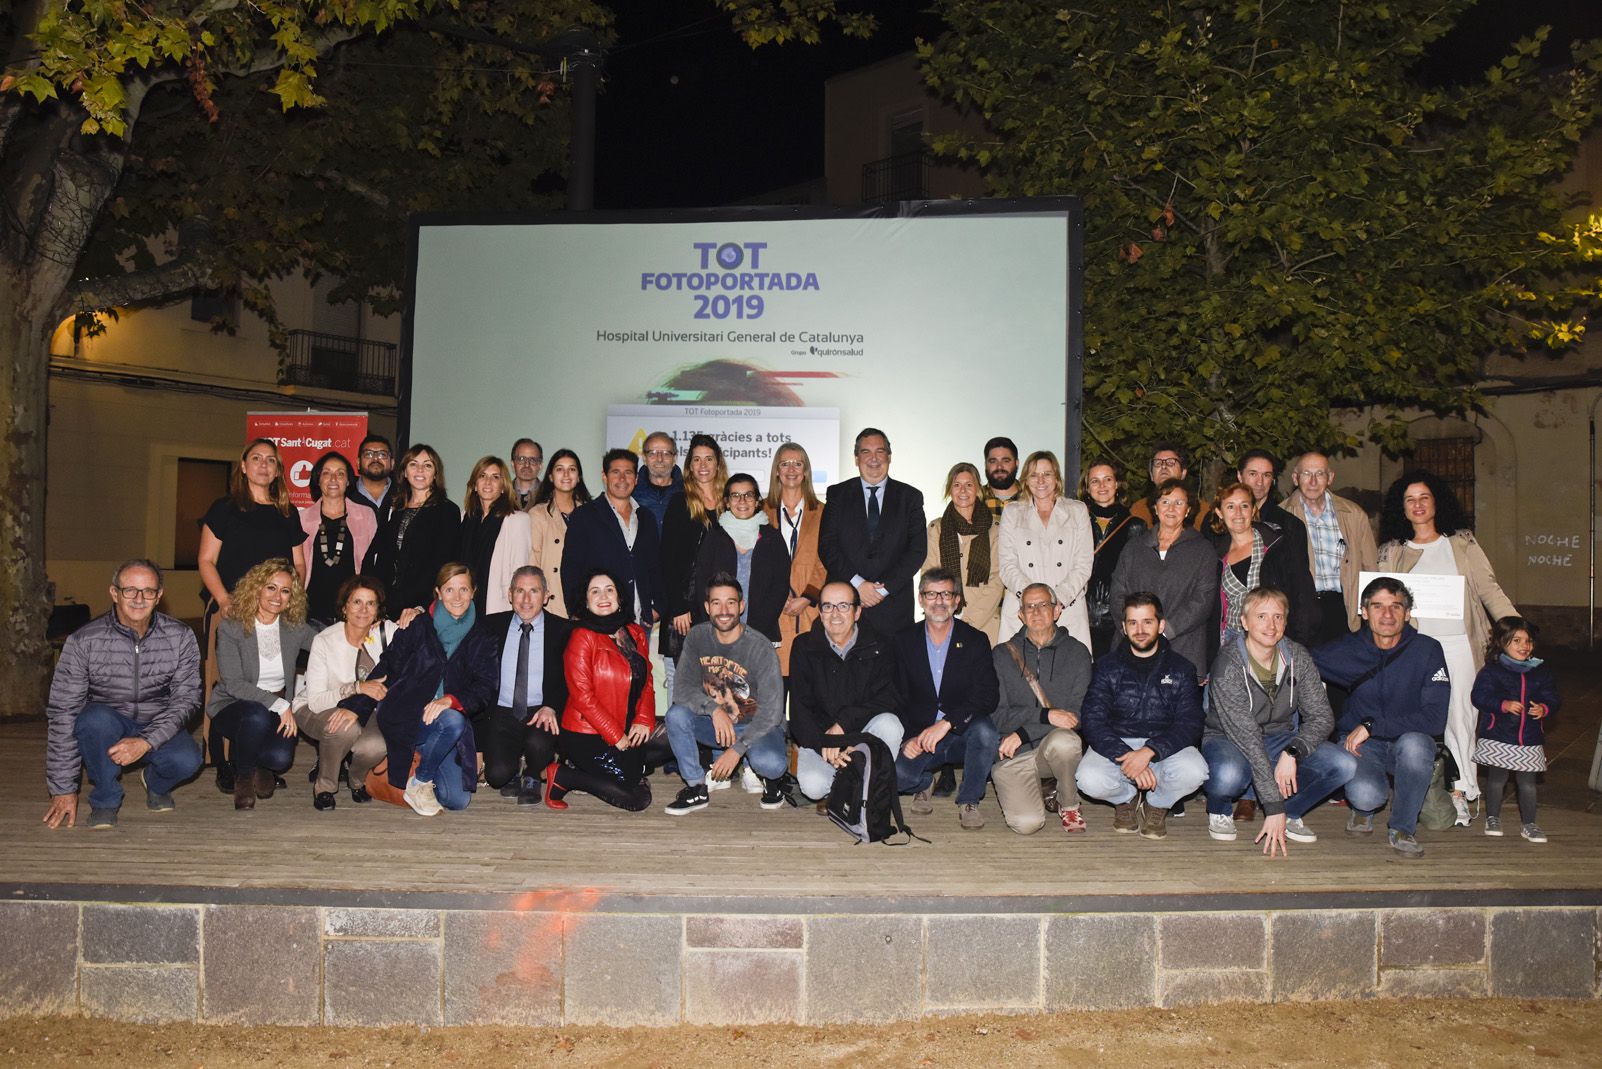 Foto de grup dels premiats, col·laboradors i organitzadors del Concurs Totfotoportada HUGC 2019. Foto: Bernat Millet.